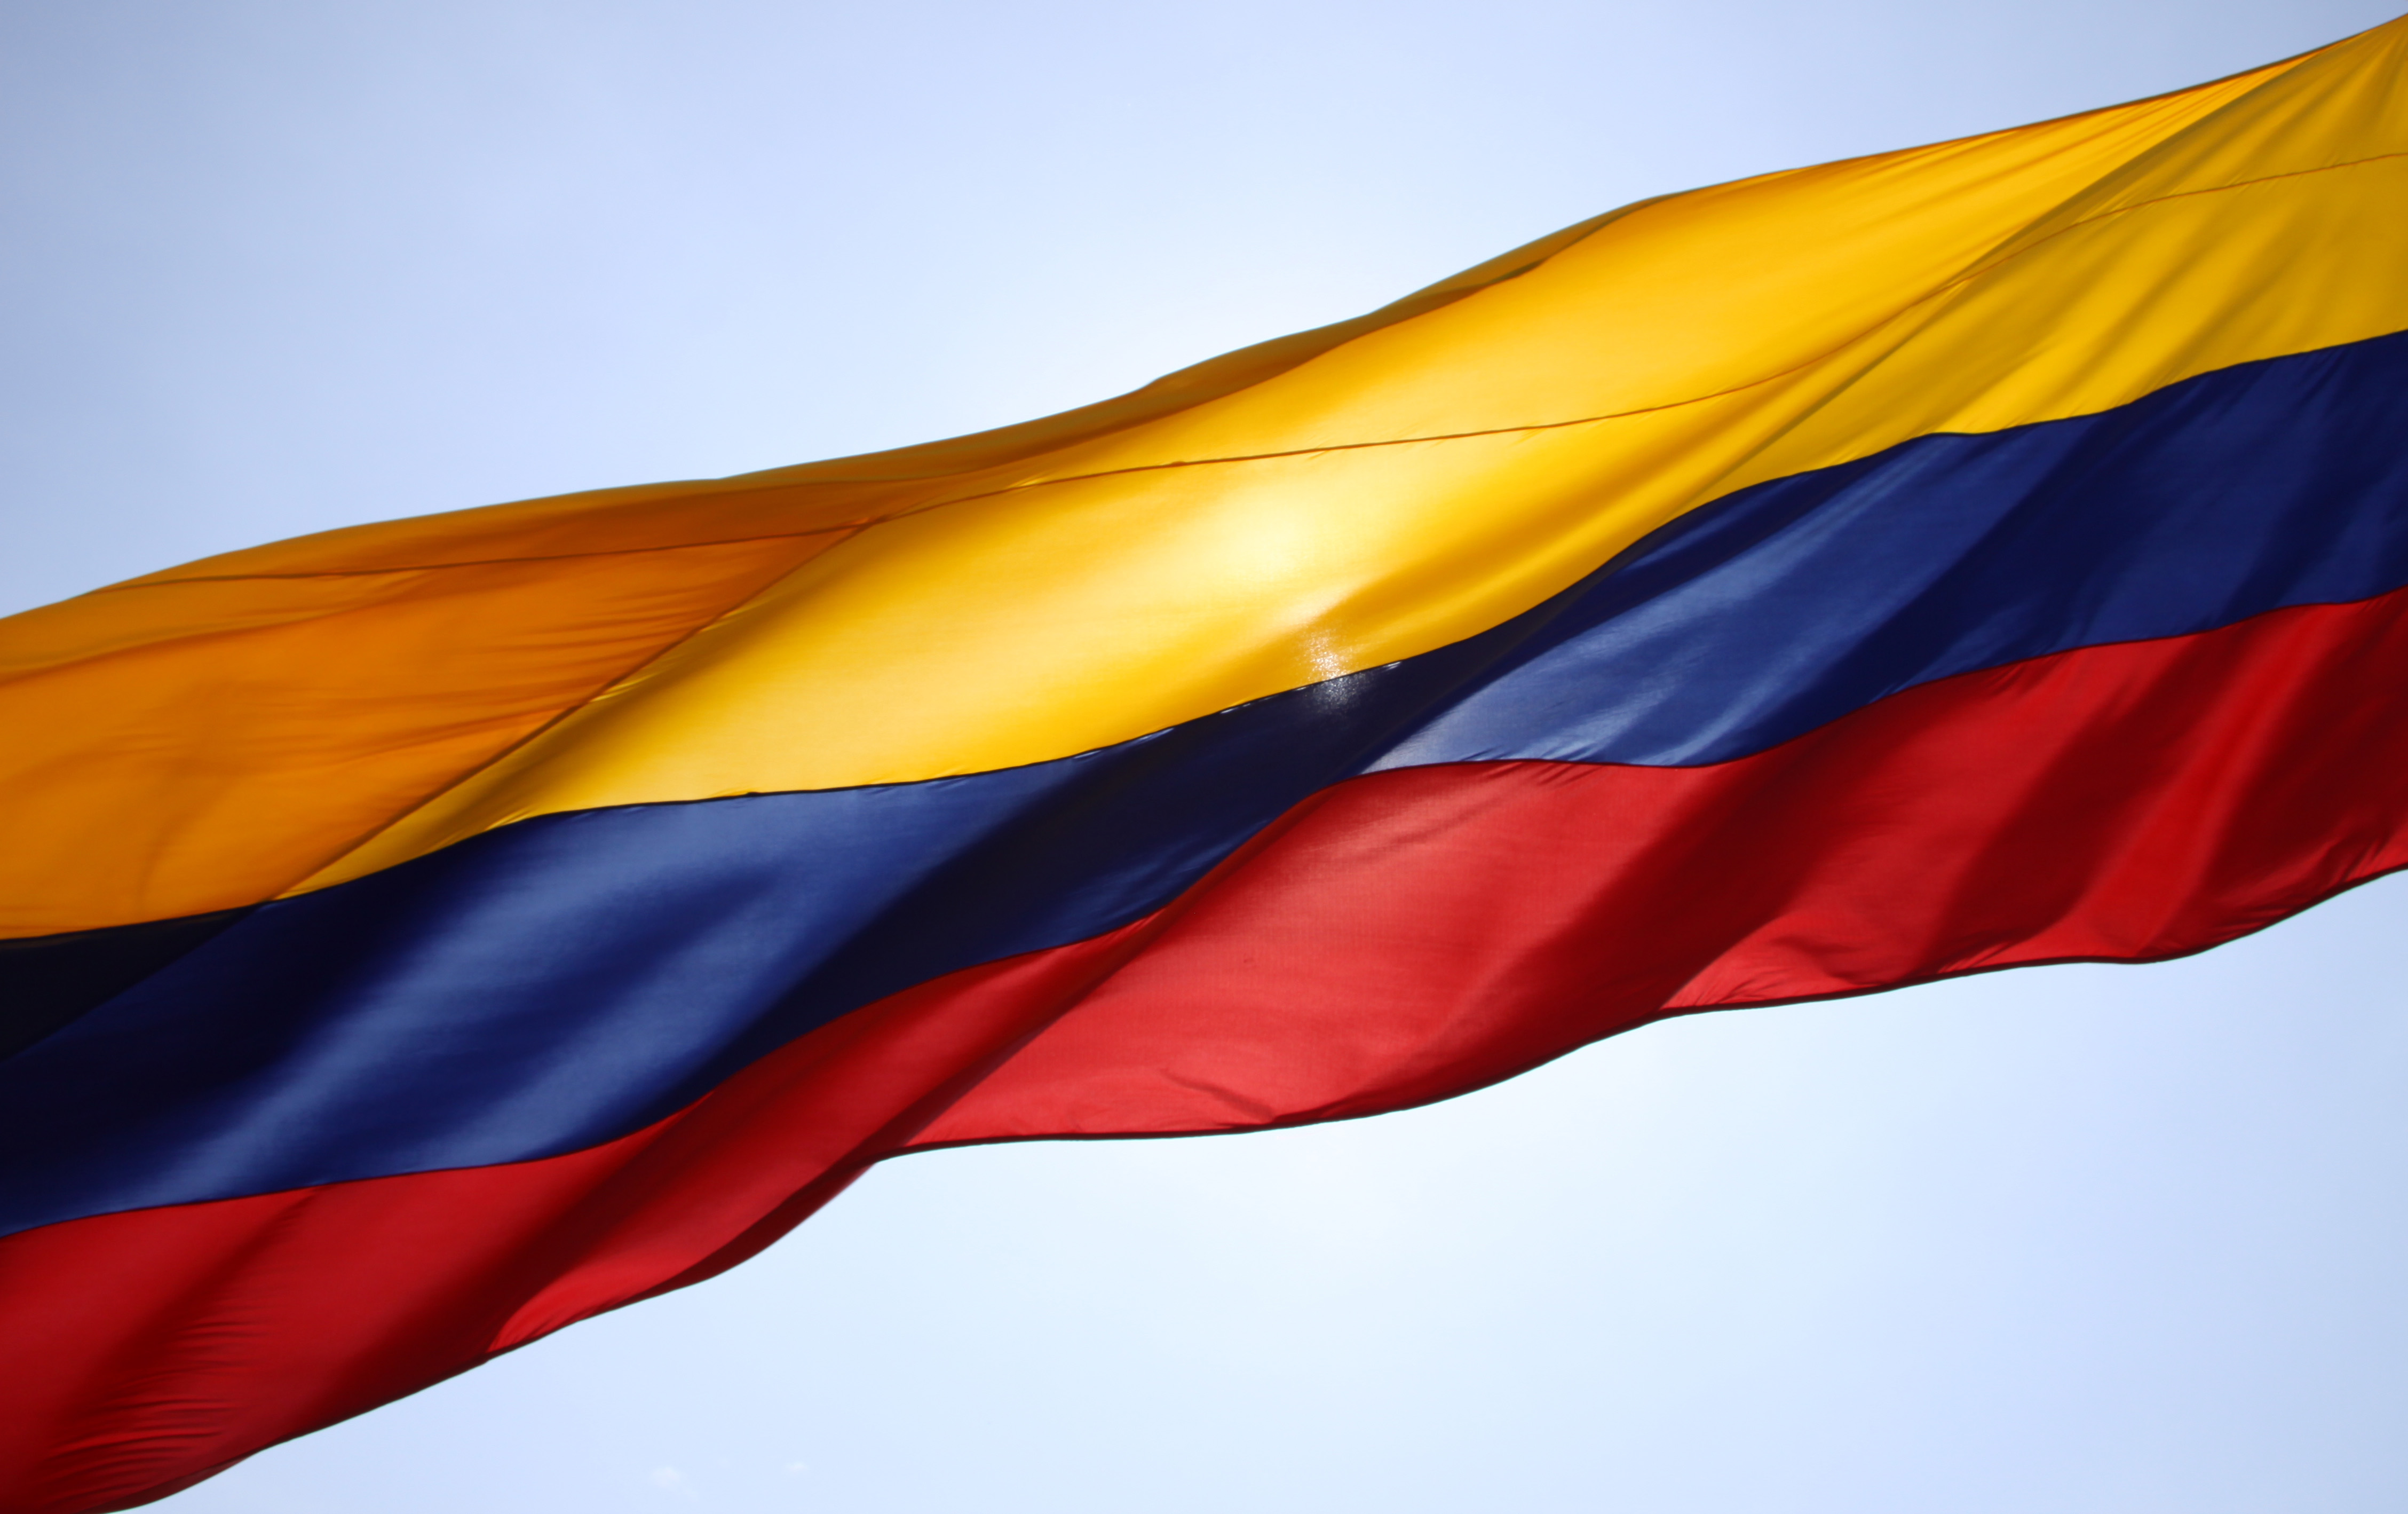 Adozioni gay – La Colombia approva 1